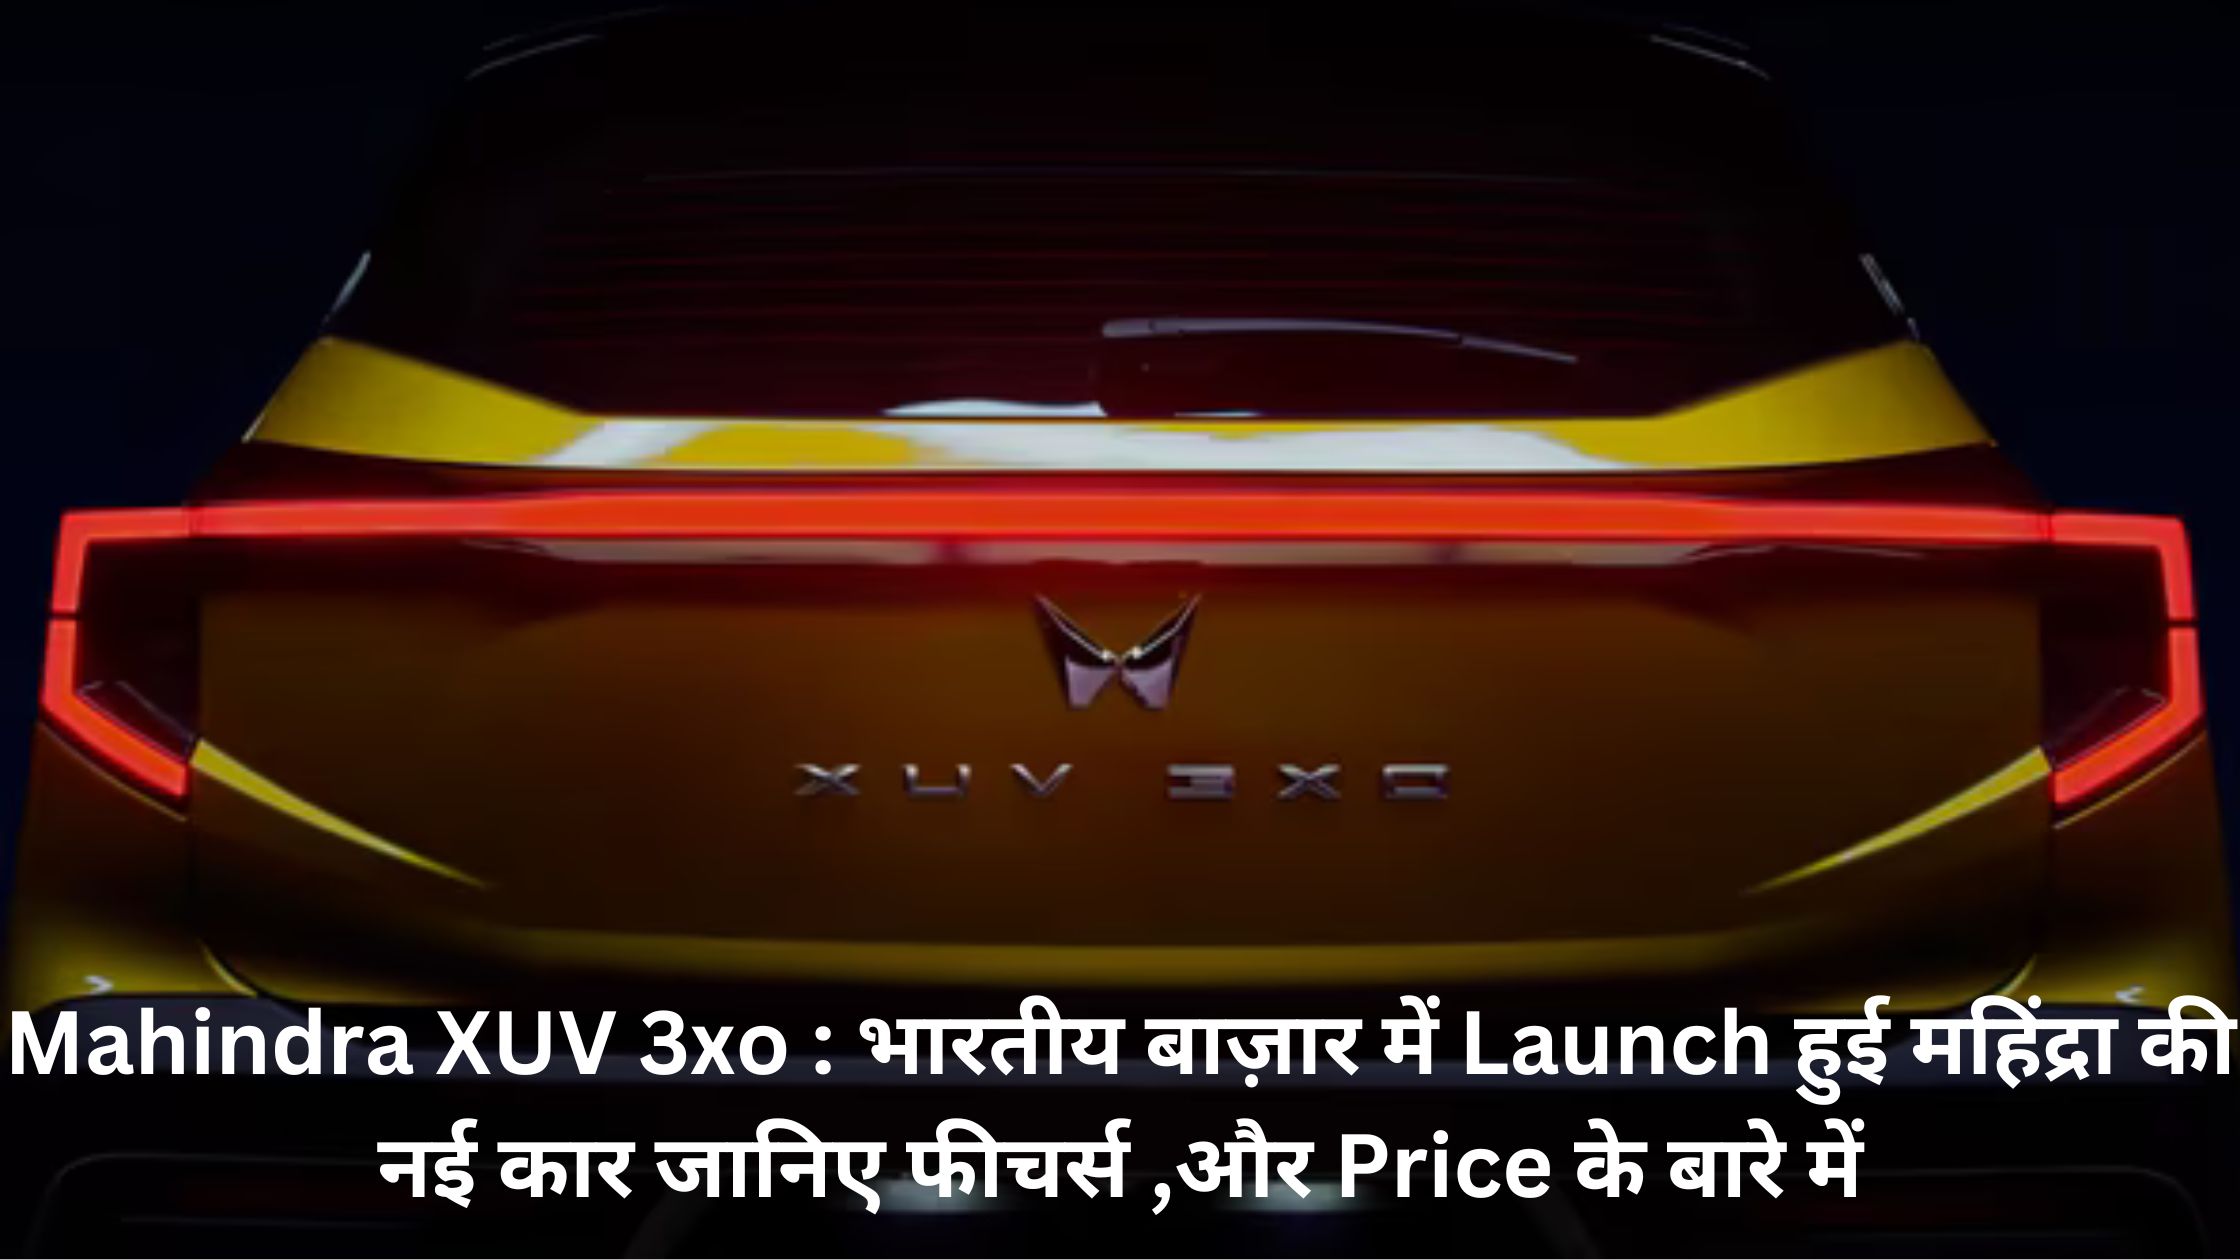 प्रमुख भारतीय कार निर्माता कंपनी महिंद्रा अपनी दमदार SUV के लिए जनि जाती है , इसलिए आज कंपनी ने बाजार में अपनी नई SUV Mahindra XUV 3xo को लांच किया है , आगे जानेगे इसके FEATURES और Price के बारे में.